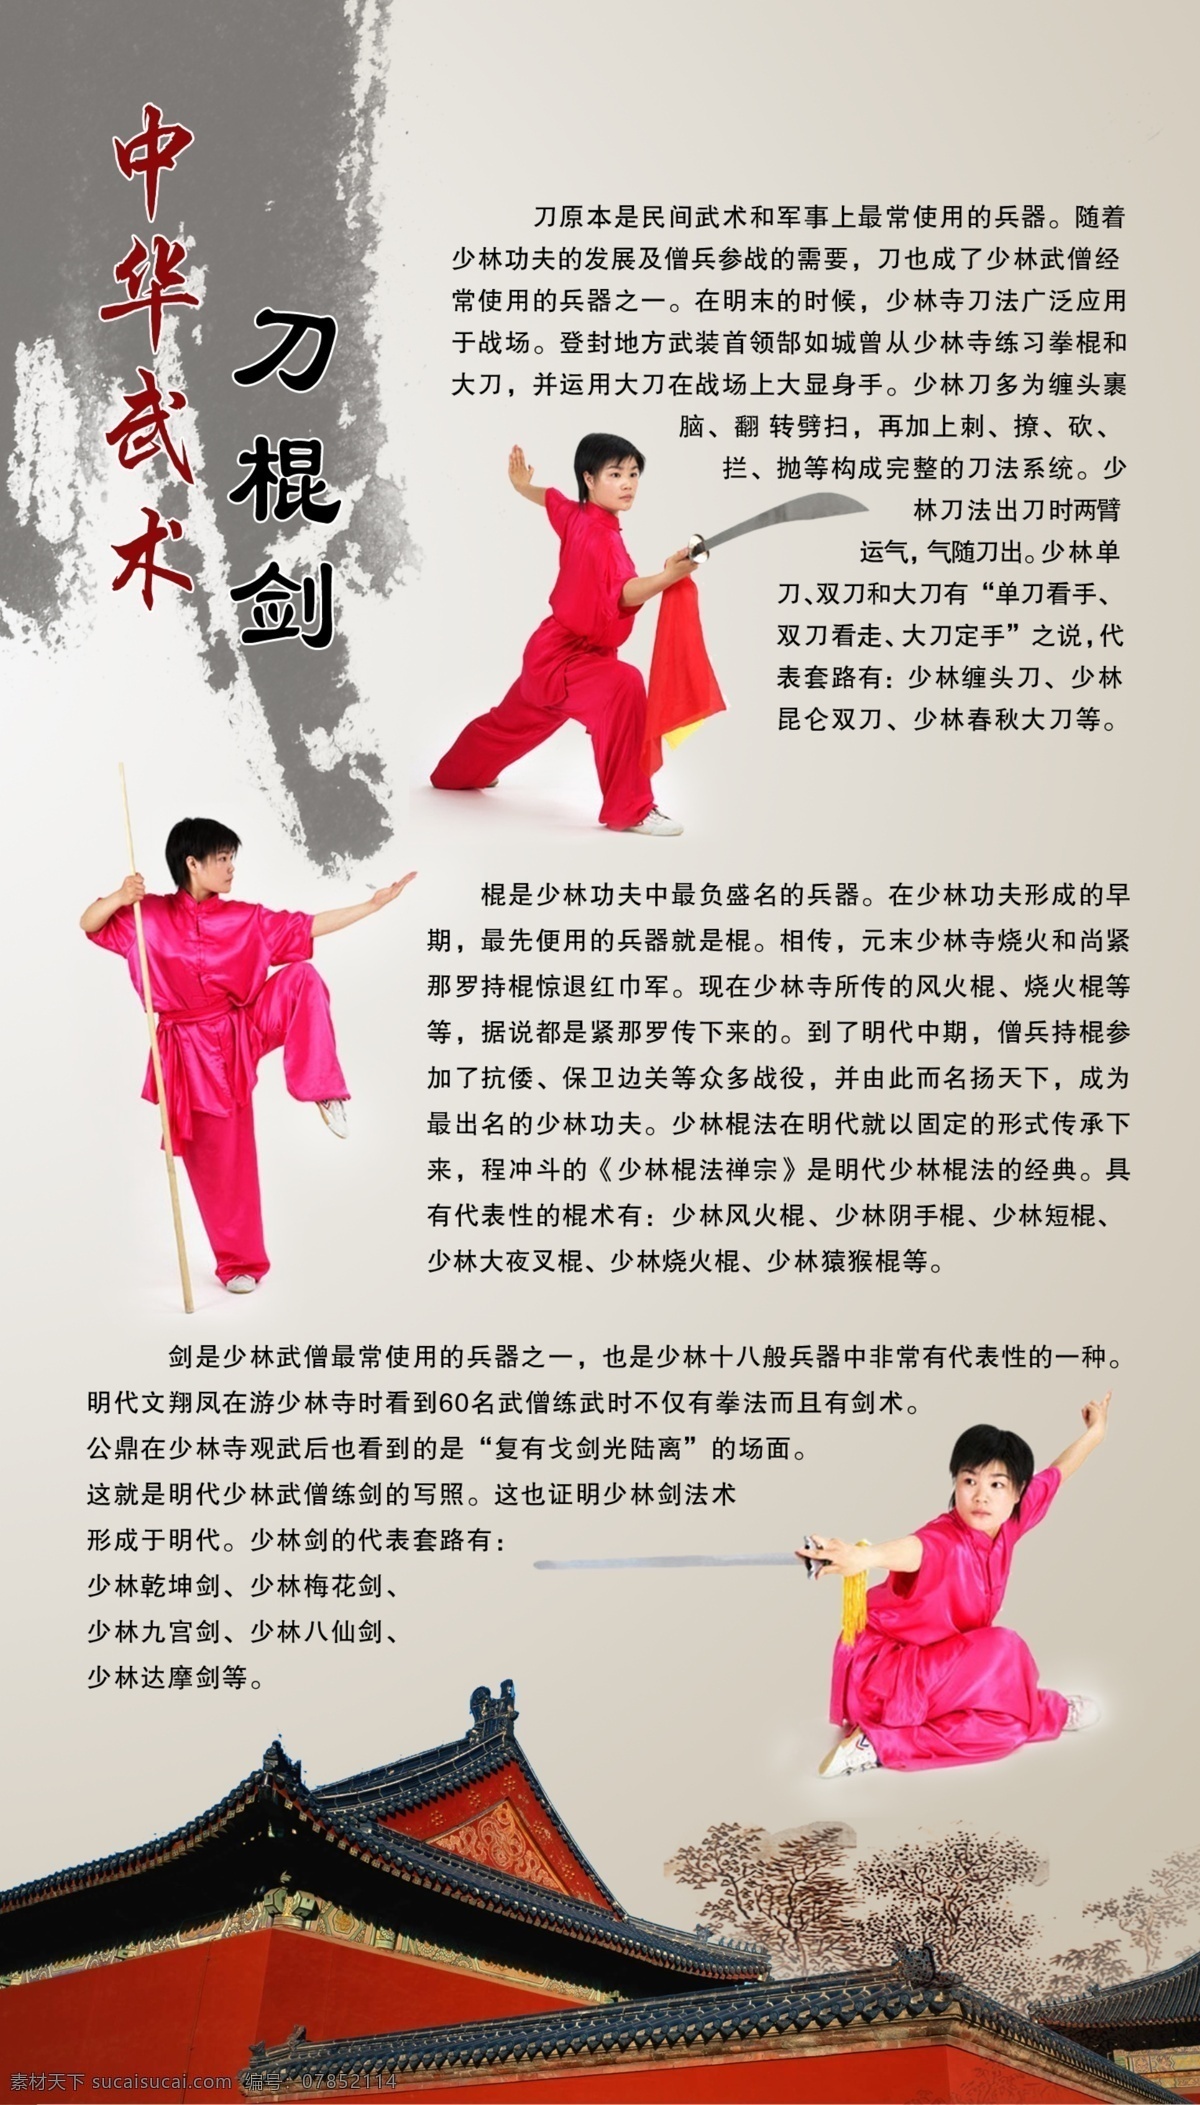 中华武术 刀 棍 剑 体育 运动 学校 武术 功夫 广告设计模板 源文件